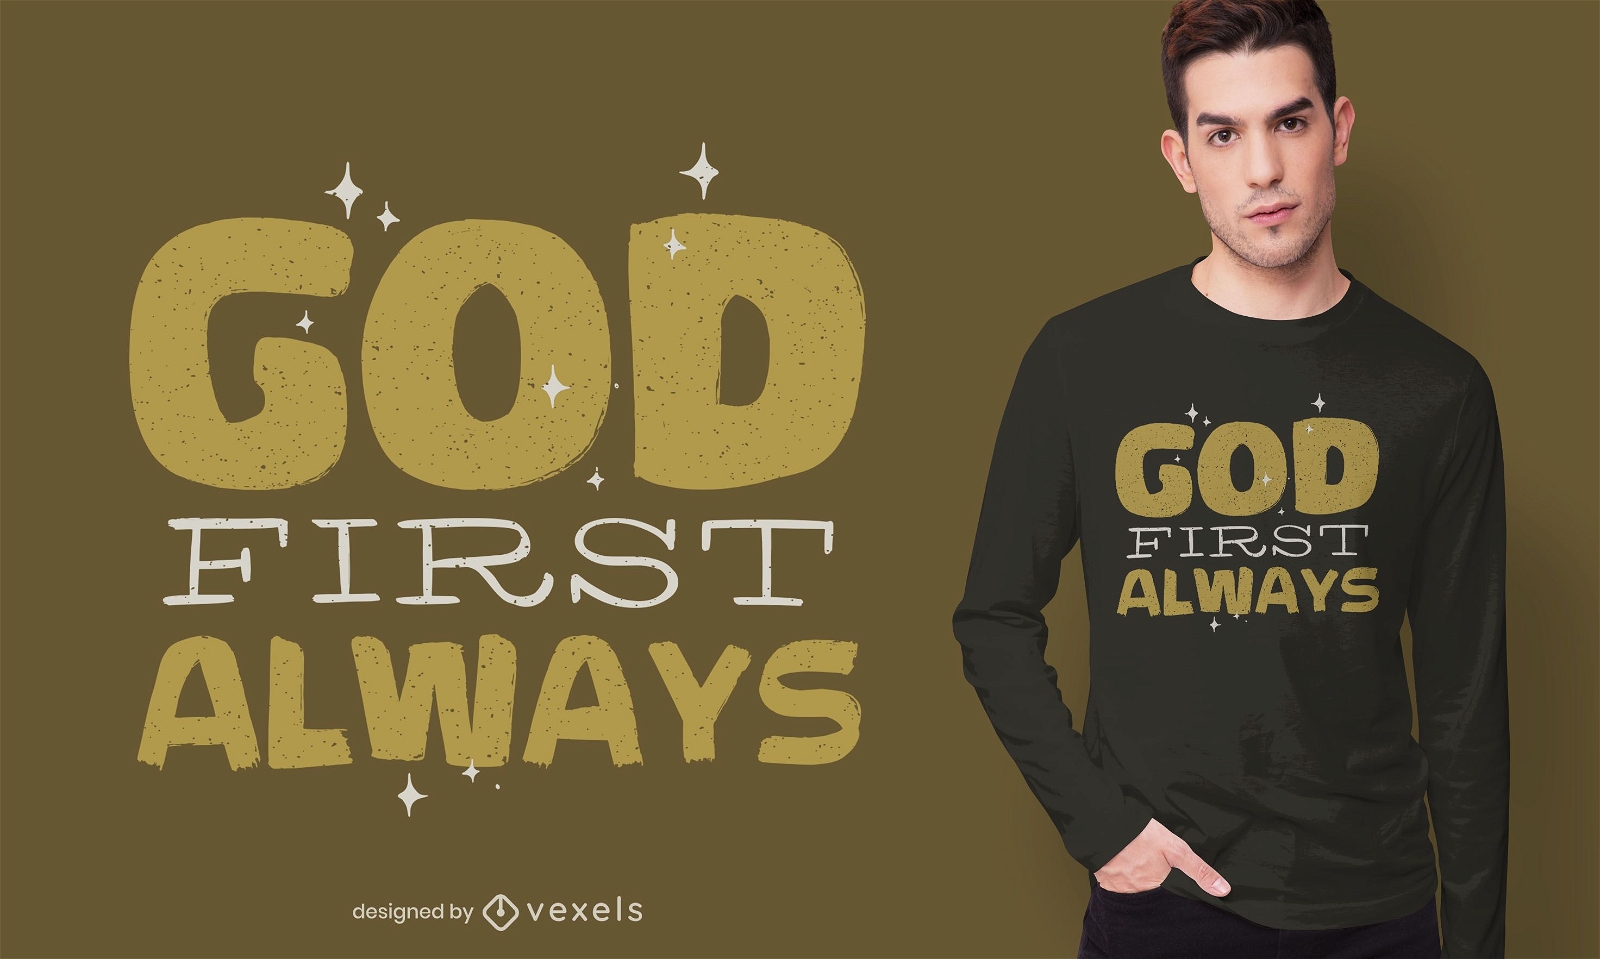 God always first t-shirt design